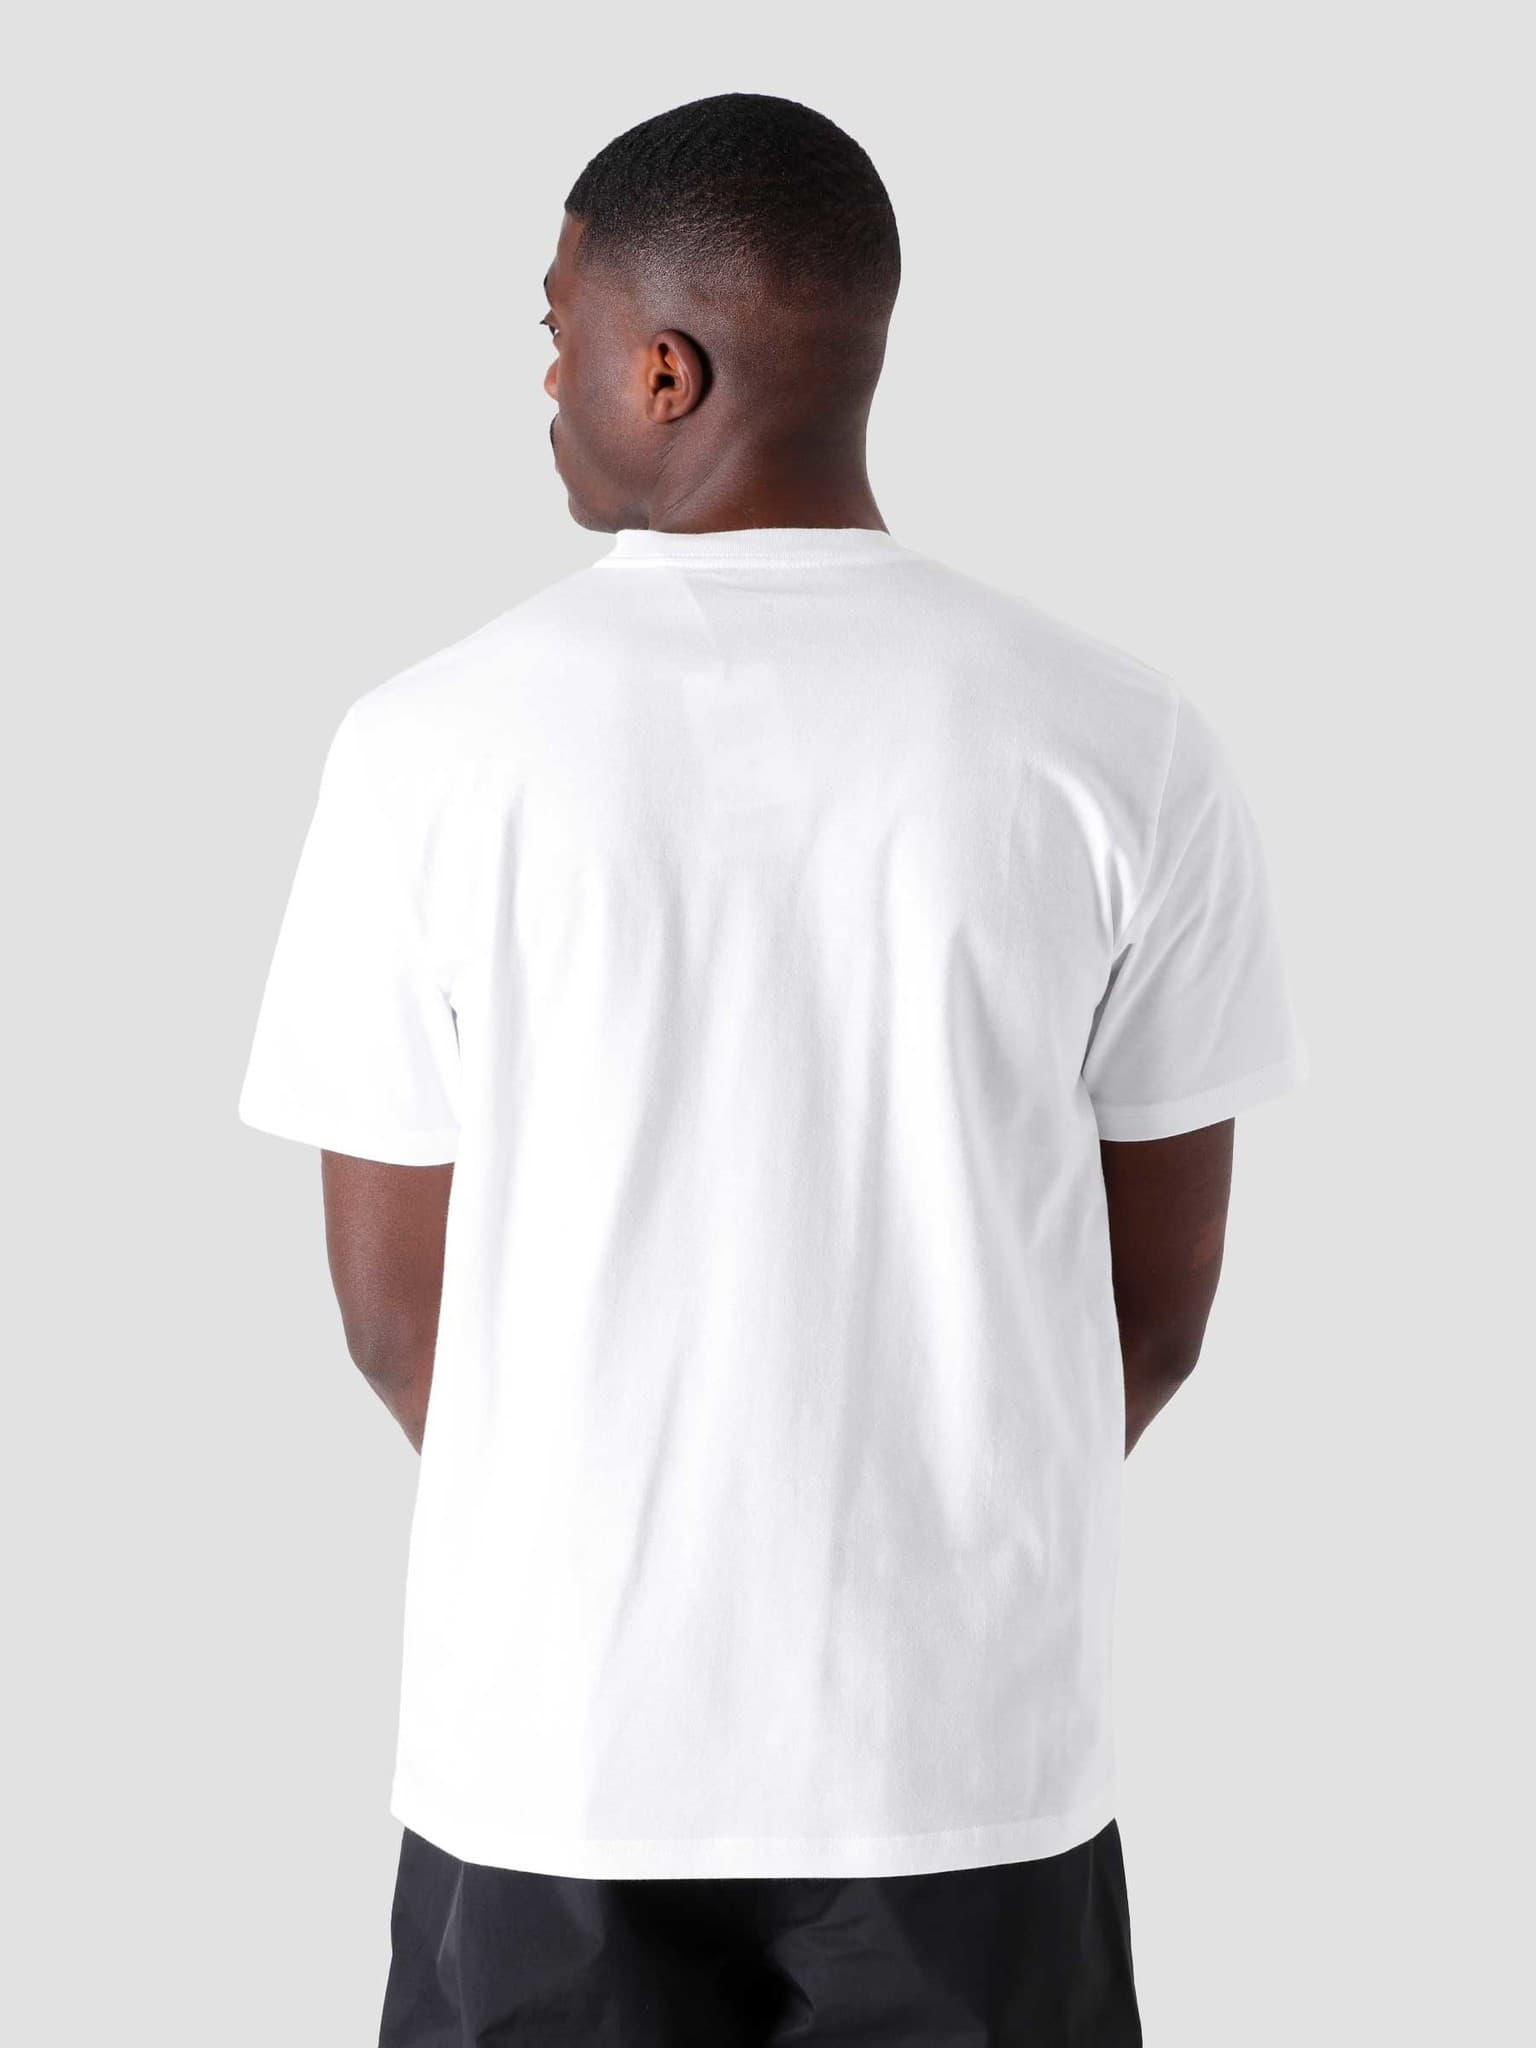 SS Misfortune T Shirt White I029065-200